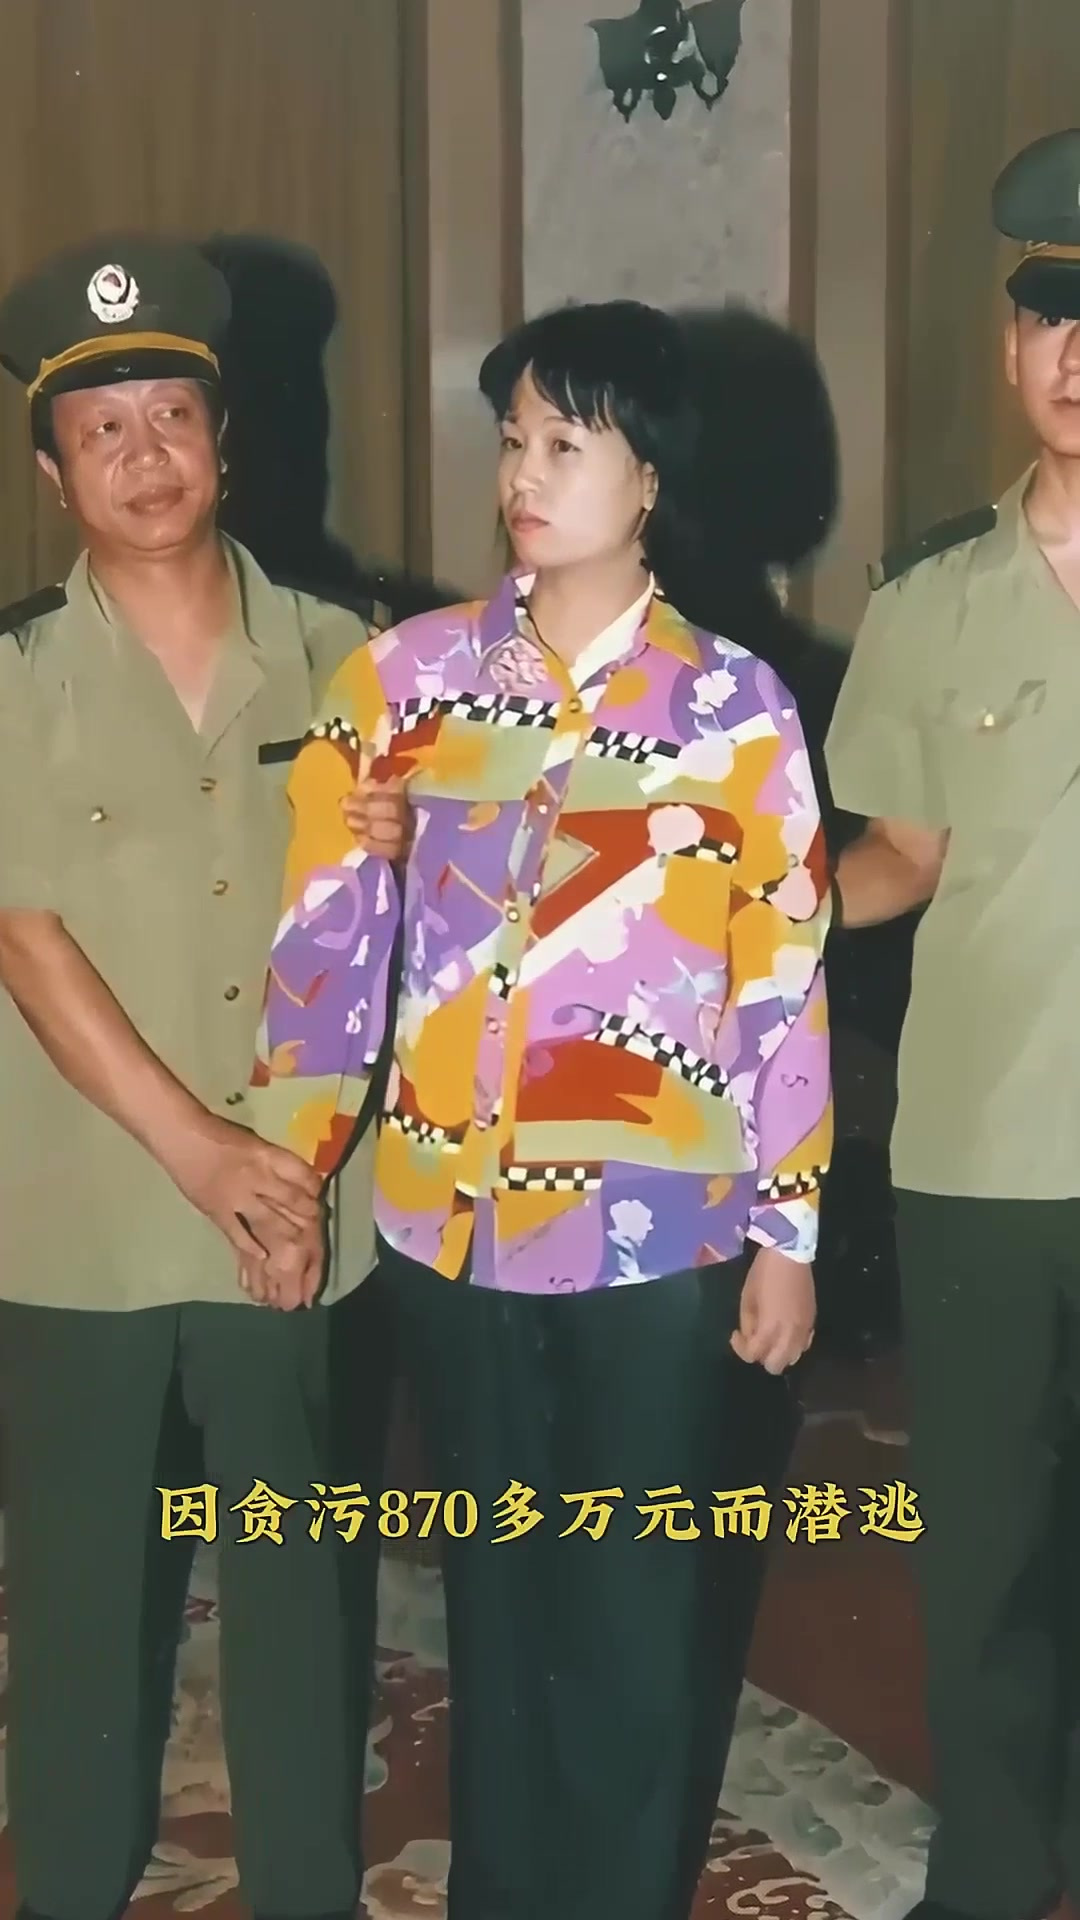 2000年,刘艺霞和李少洋夫妇被判处死刑,刘艺霞曾贪污870多万元